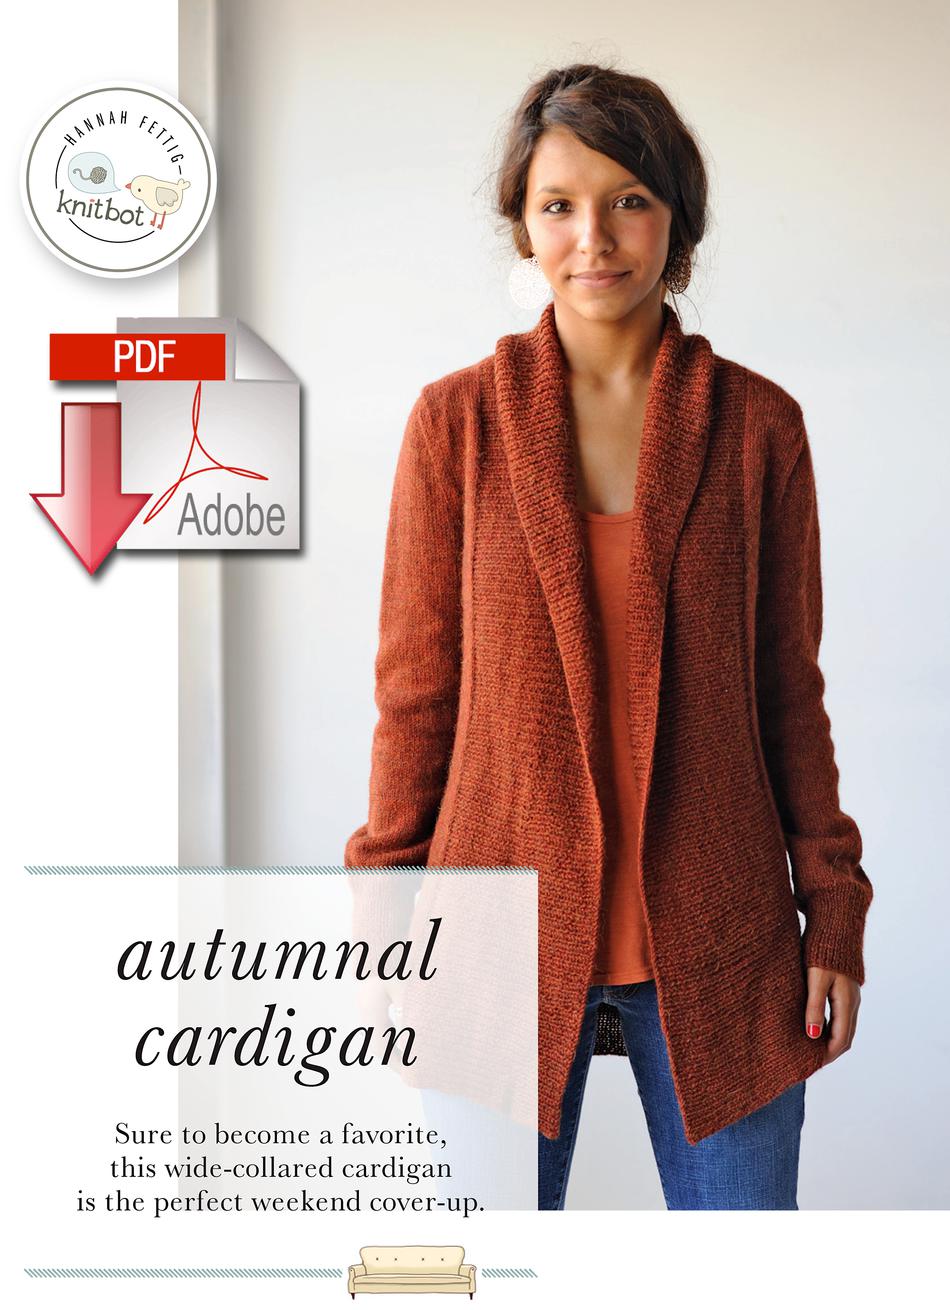 Knitting Patterns Knitbot Autumnal Cardigan  Pattern download